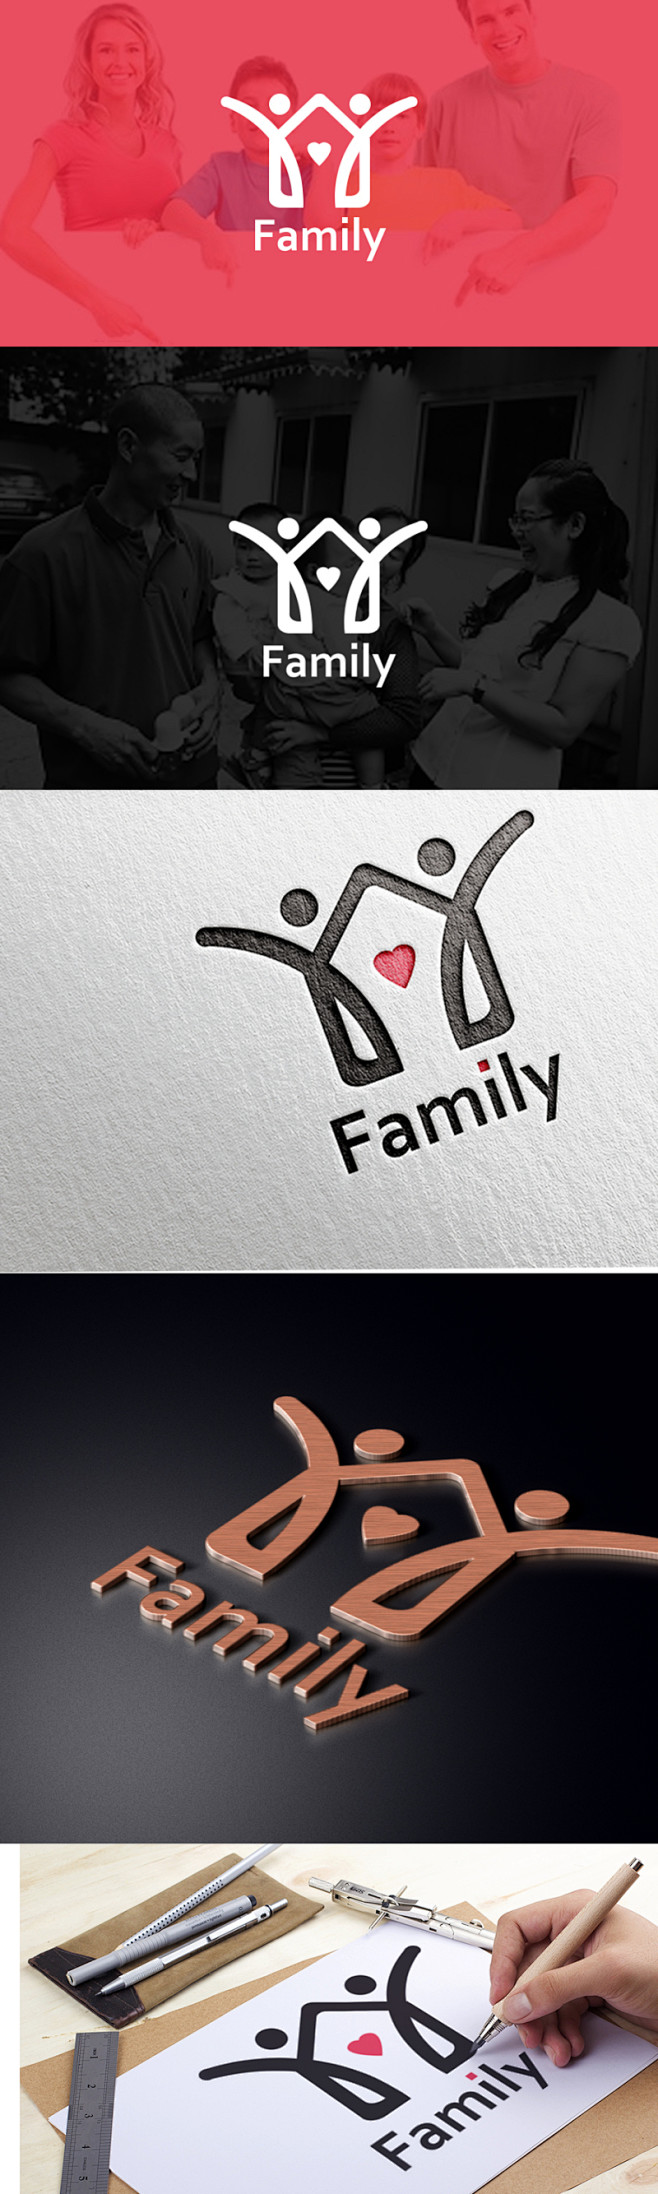 创建幸福家庭logo 共创幸福家庭 - ...